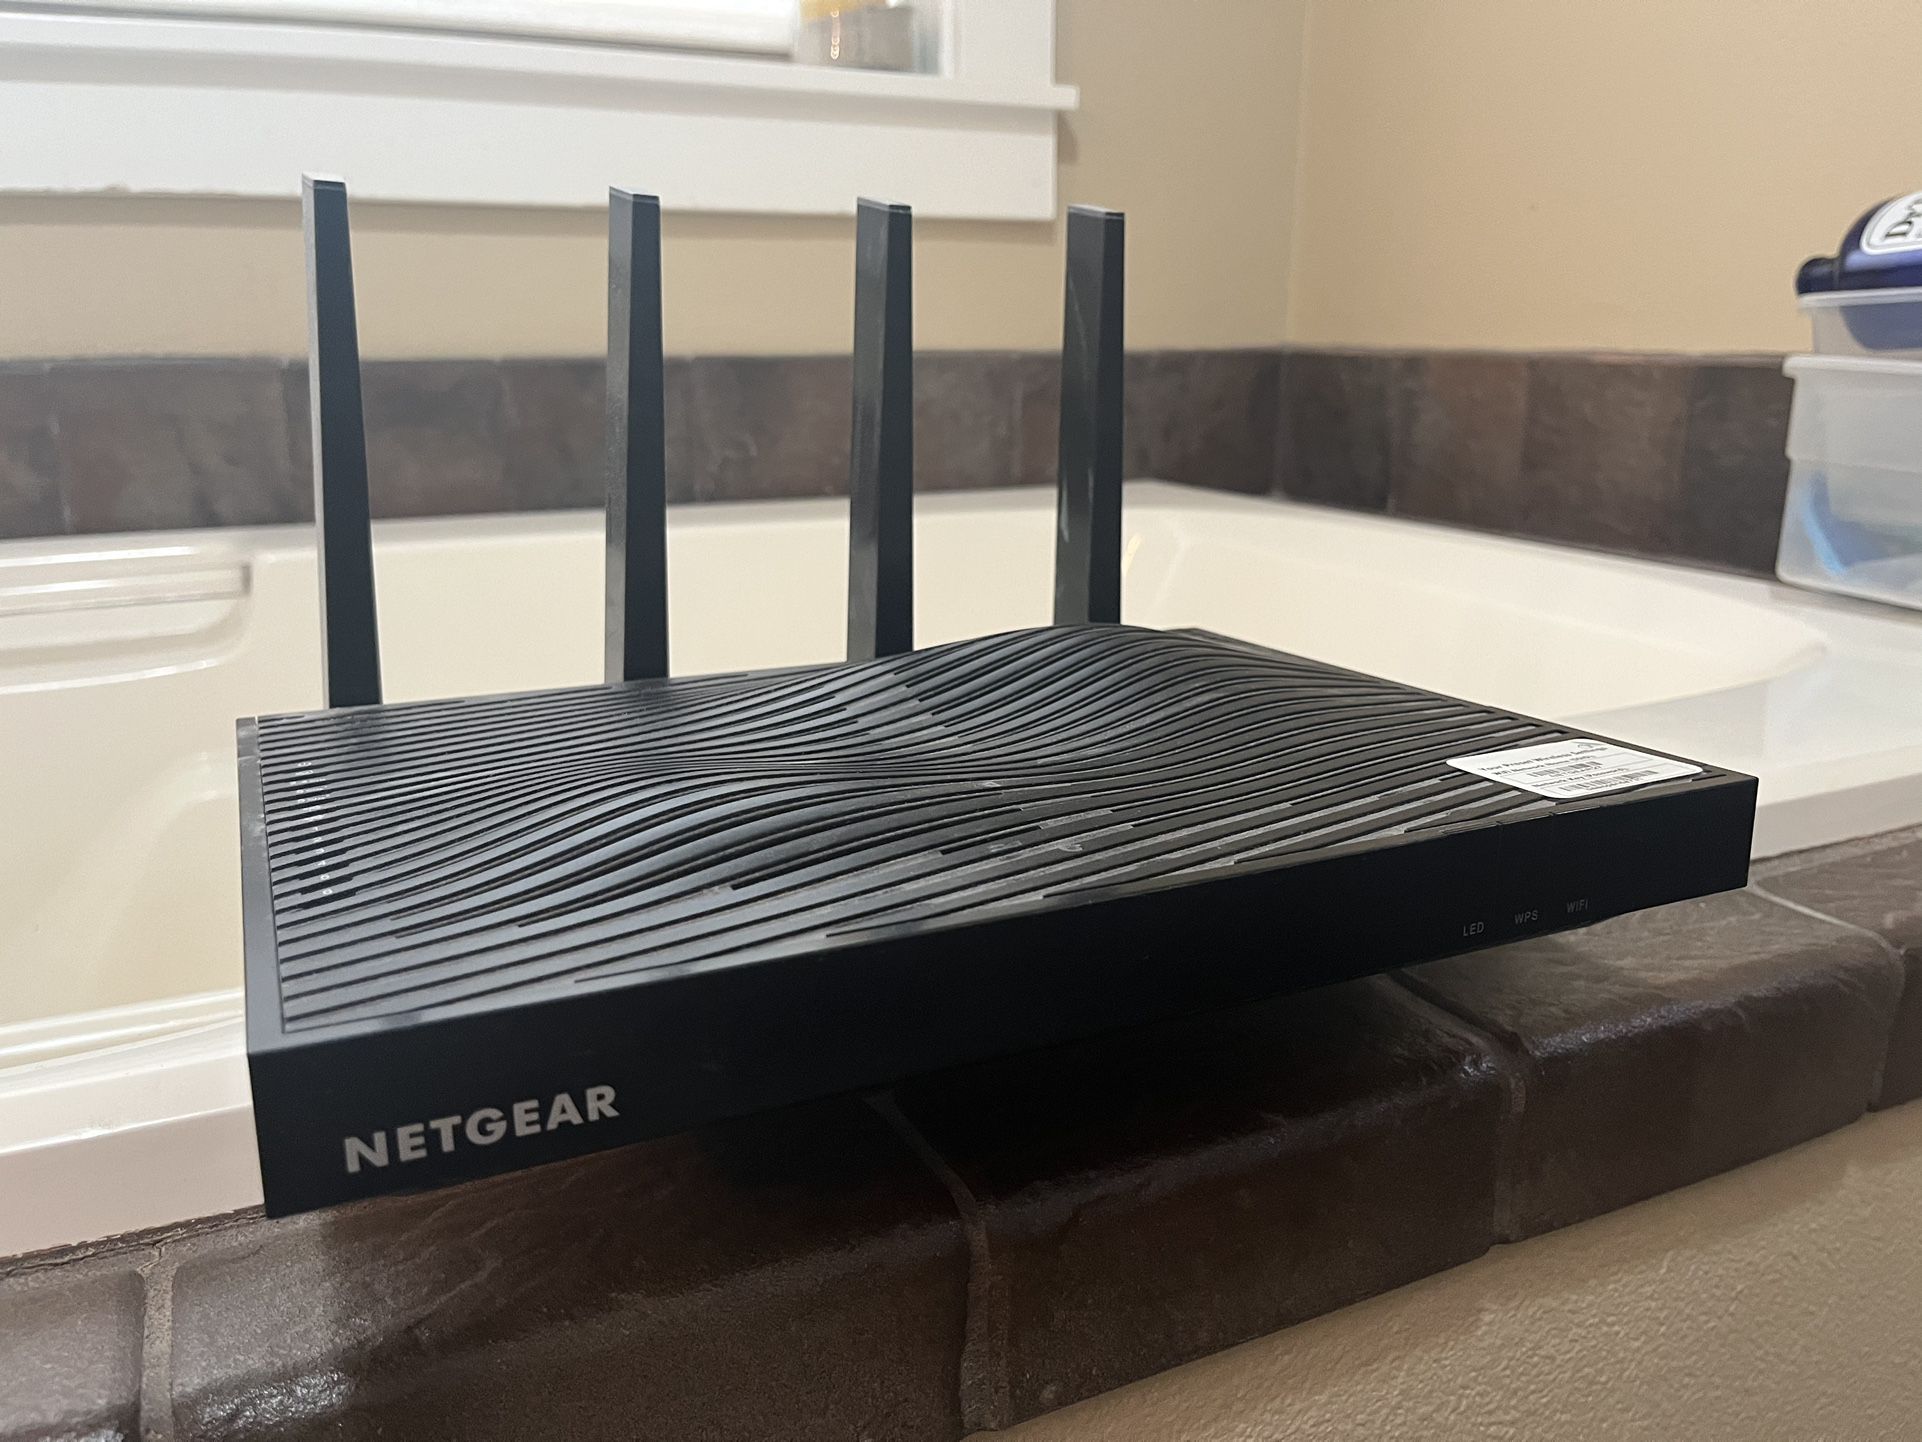 NETGEAR AC5300 Nighthawk X8 Tri-Band WiFi Router (R8500-100NAS) 